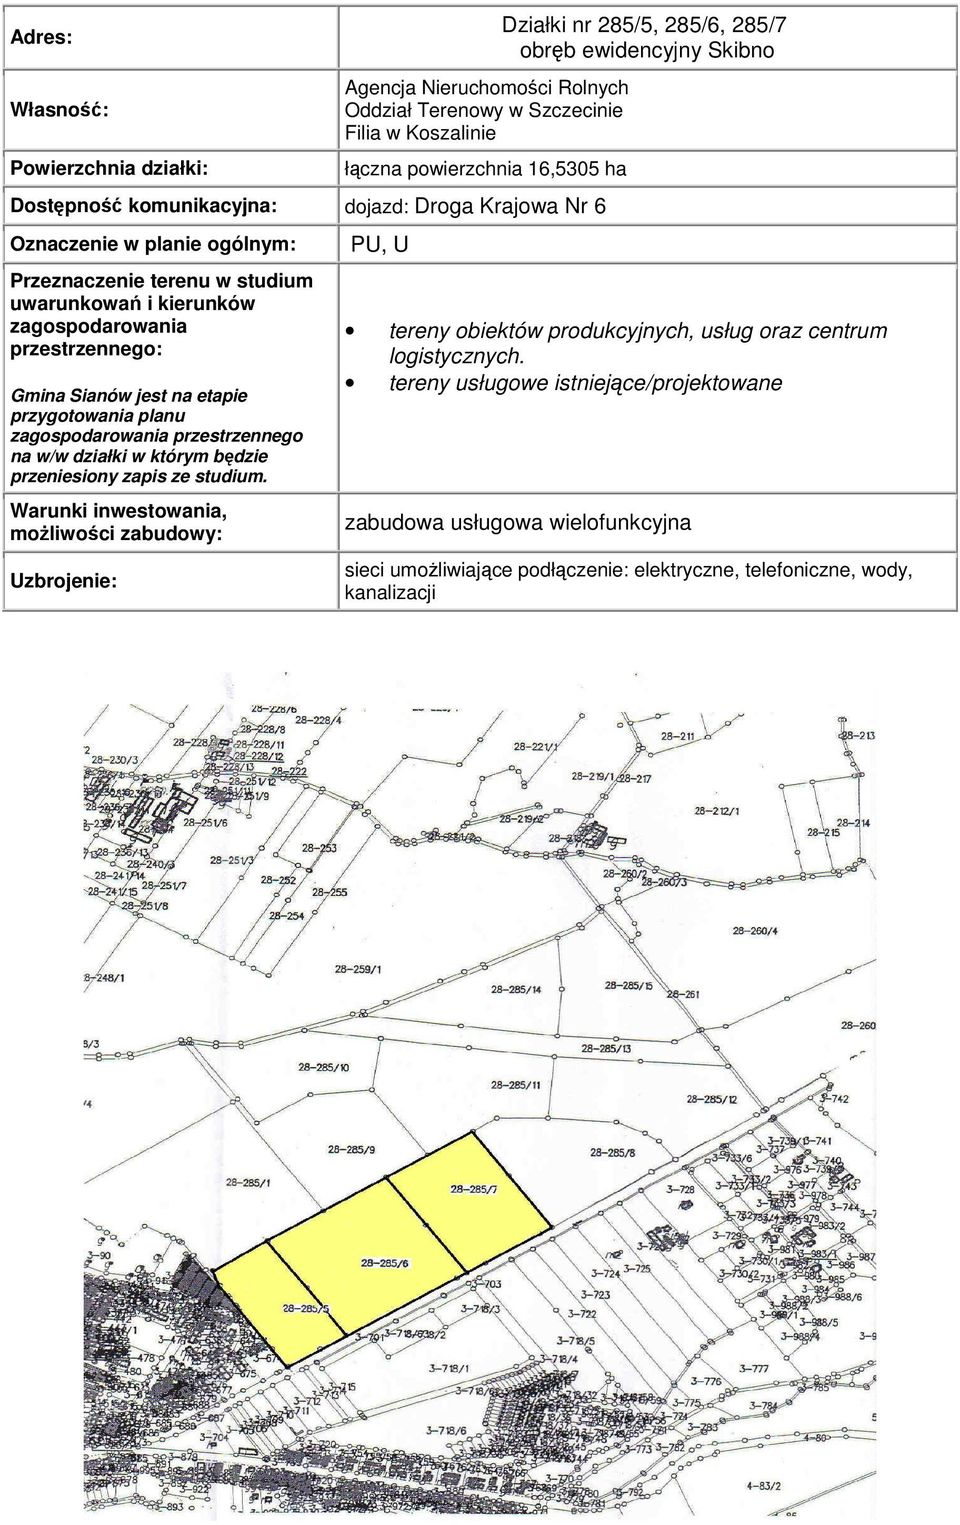 PU, U Działki nr 285/5, 285/6, 285/7 obręb ewidencyjny Skibno tereny obiektów produkcyjnych, usług oraz centrum logistycznych.